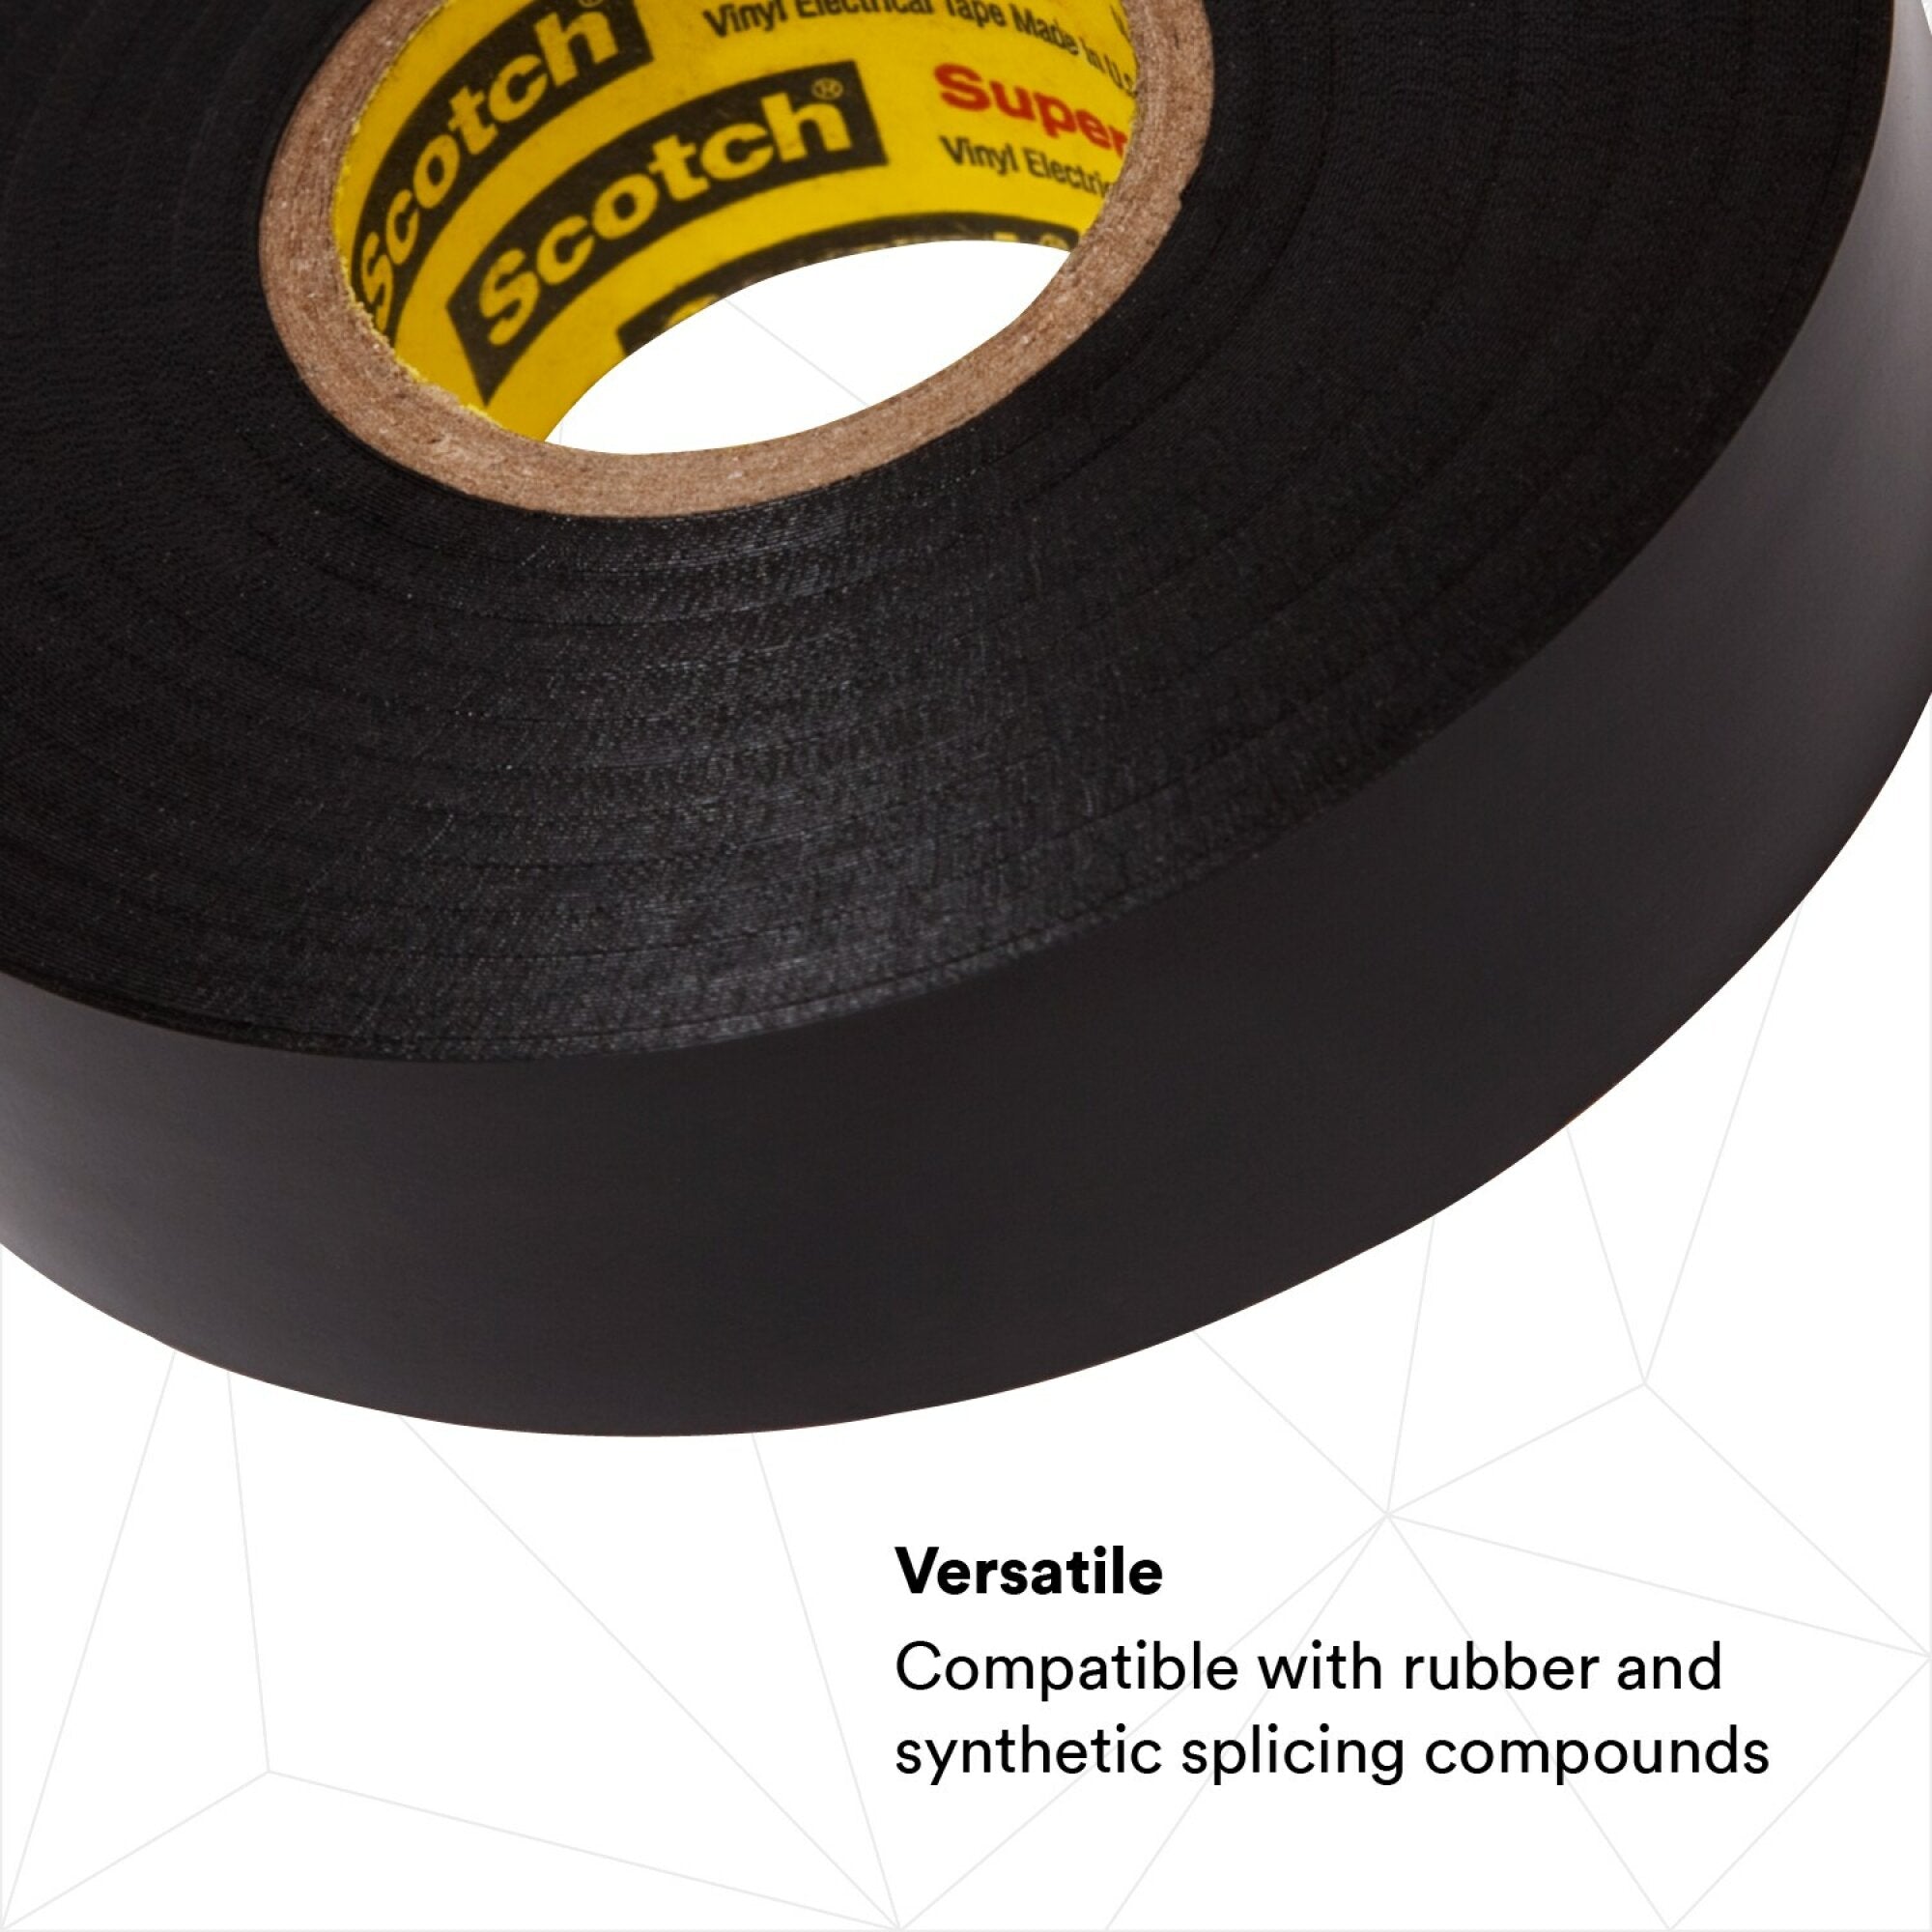 Scotch? Super 33+ Vinyl Electrical Tape, 3/4 in x 44 ft, Black, 10
rolls/carton